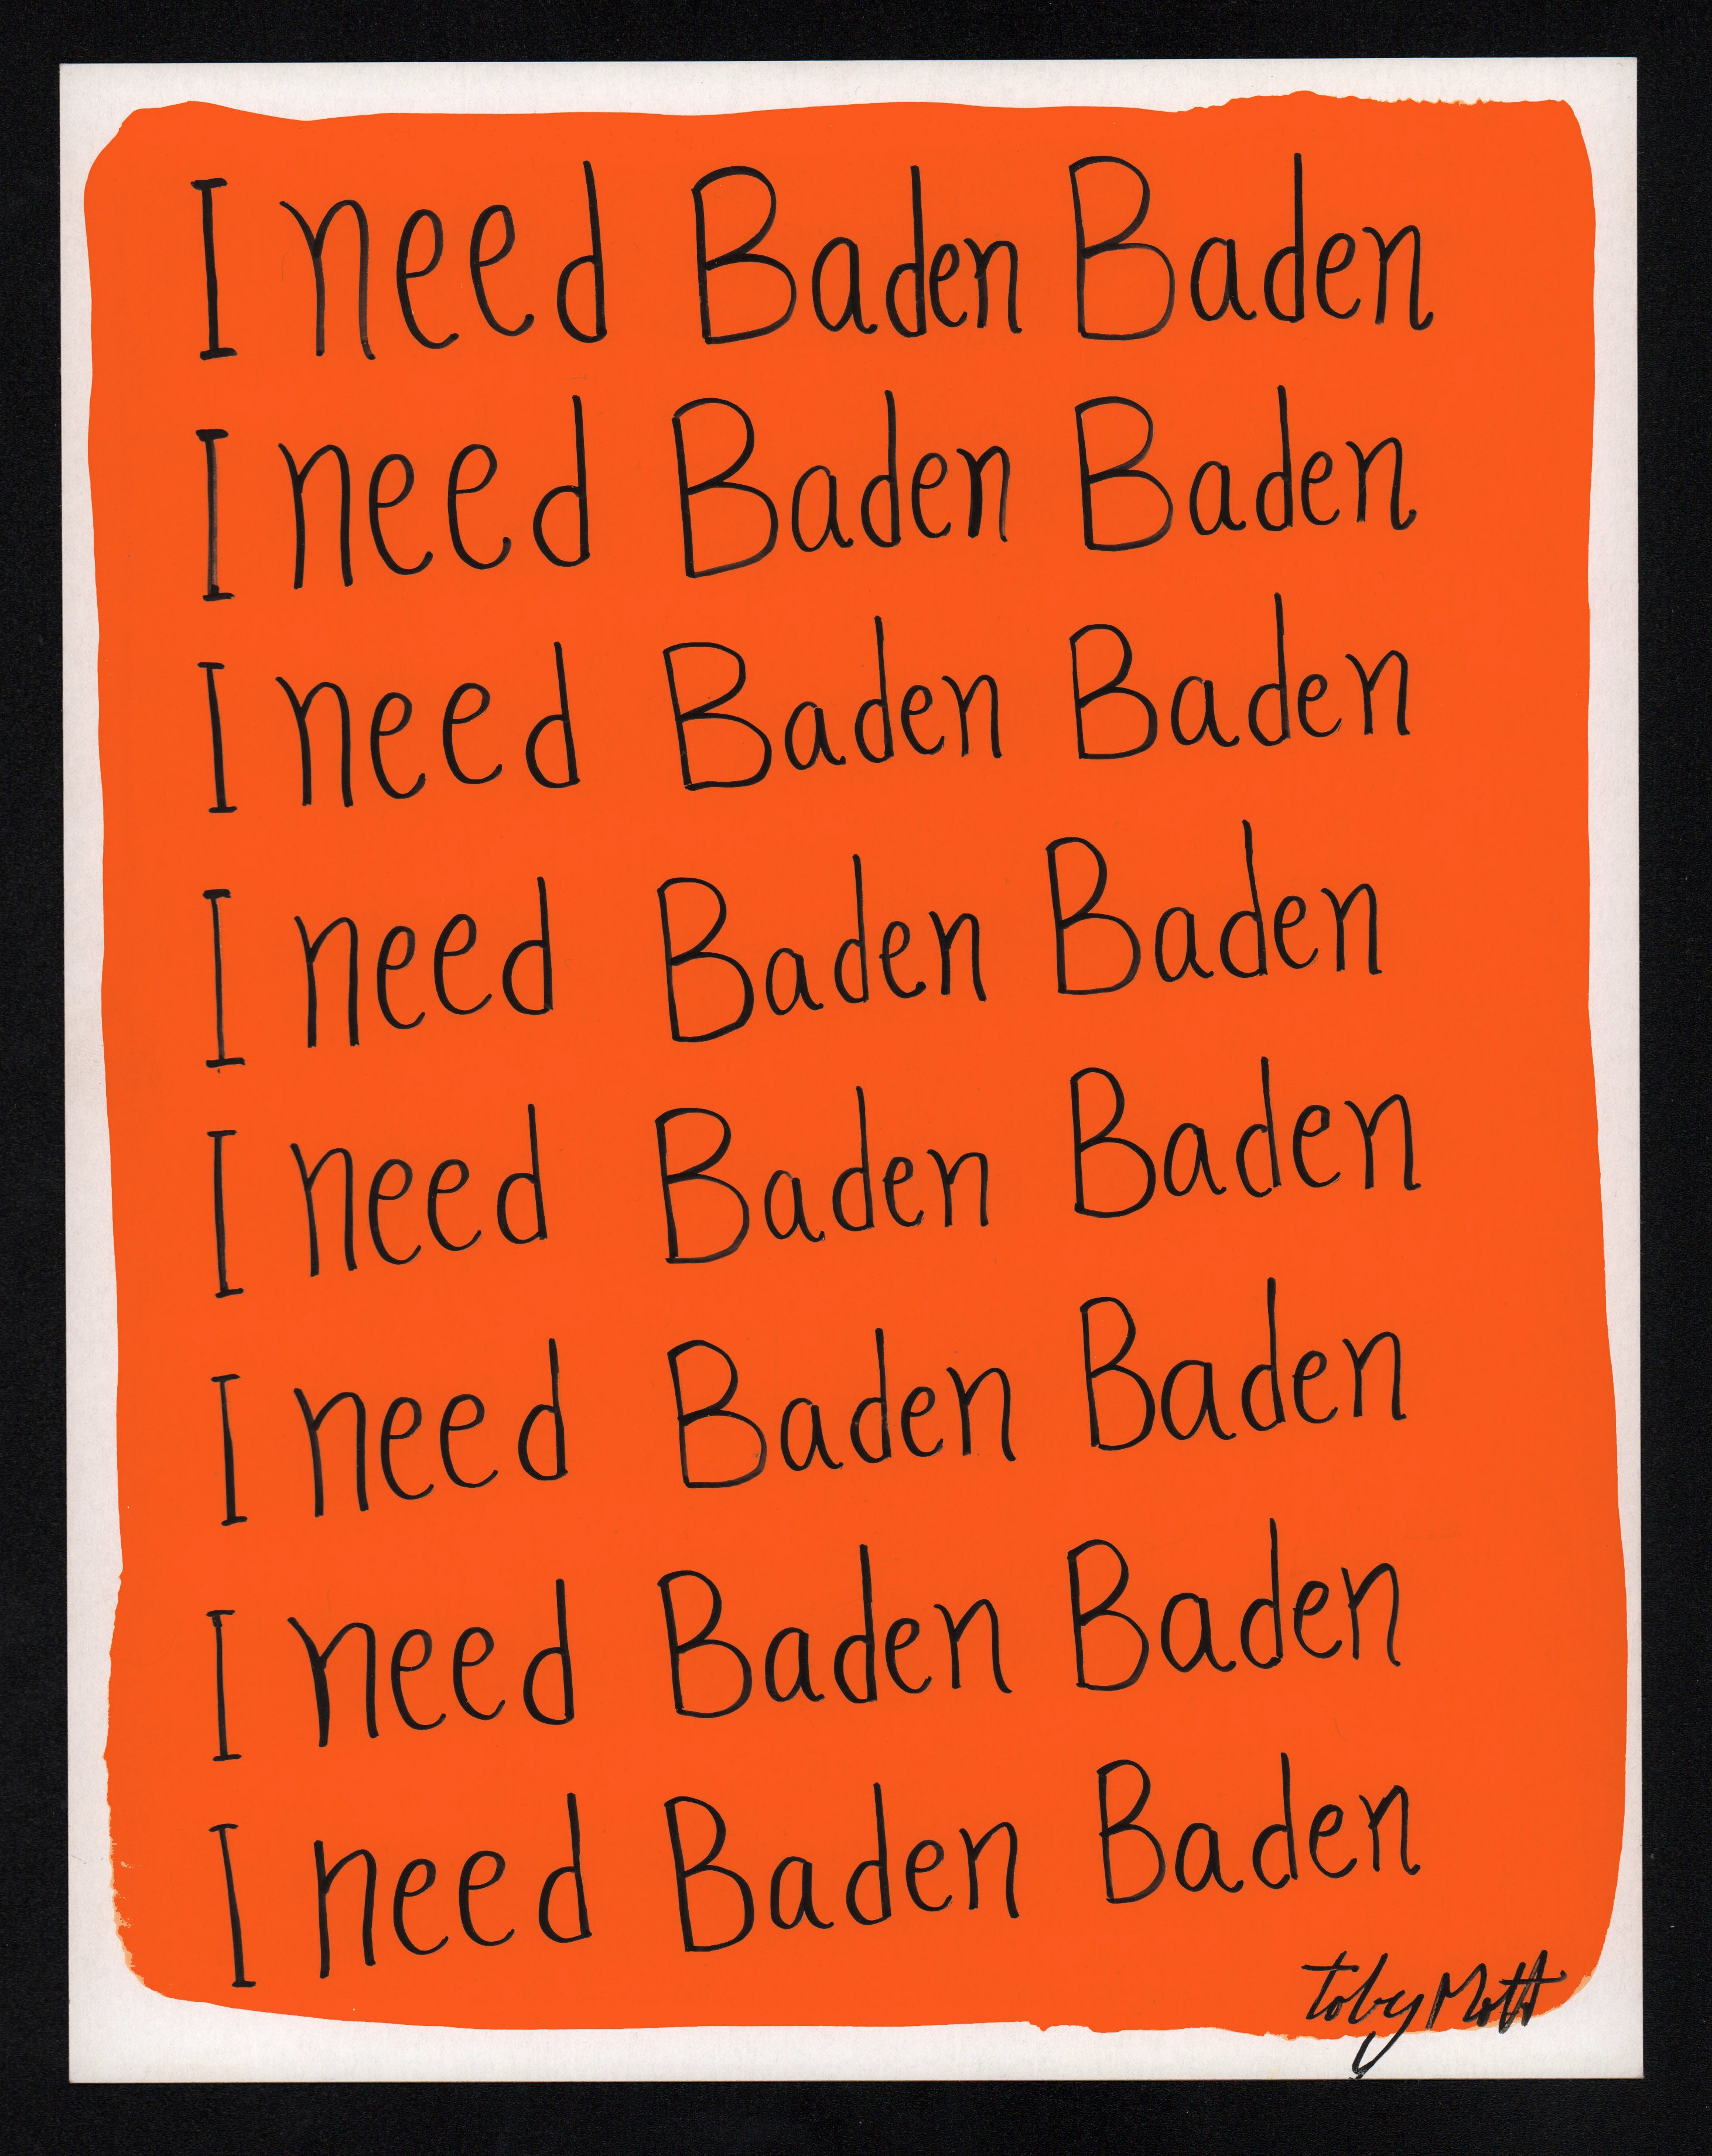 I need Baden Baden